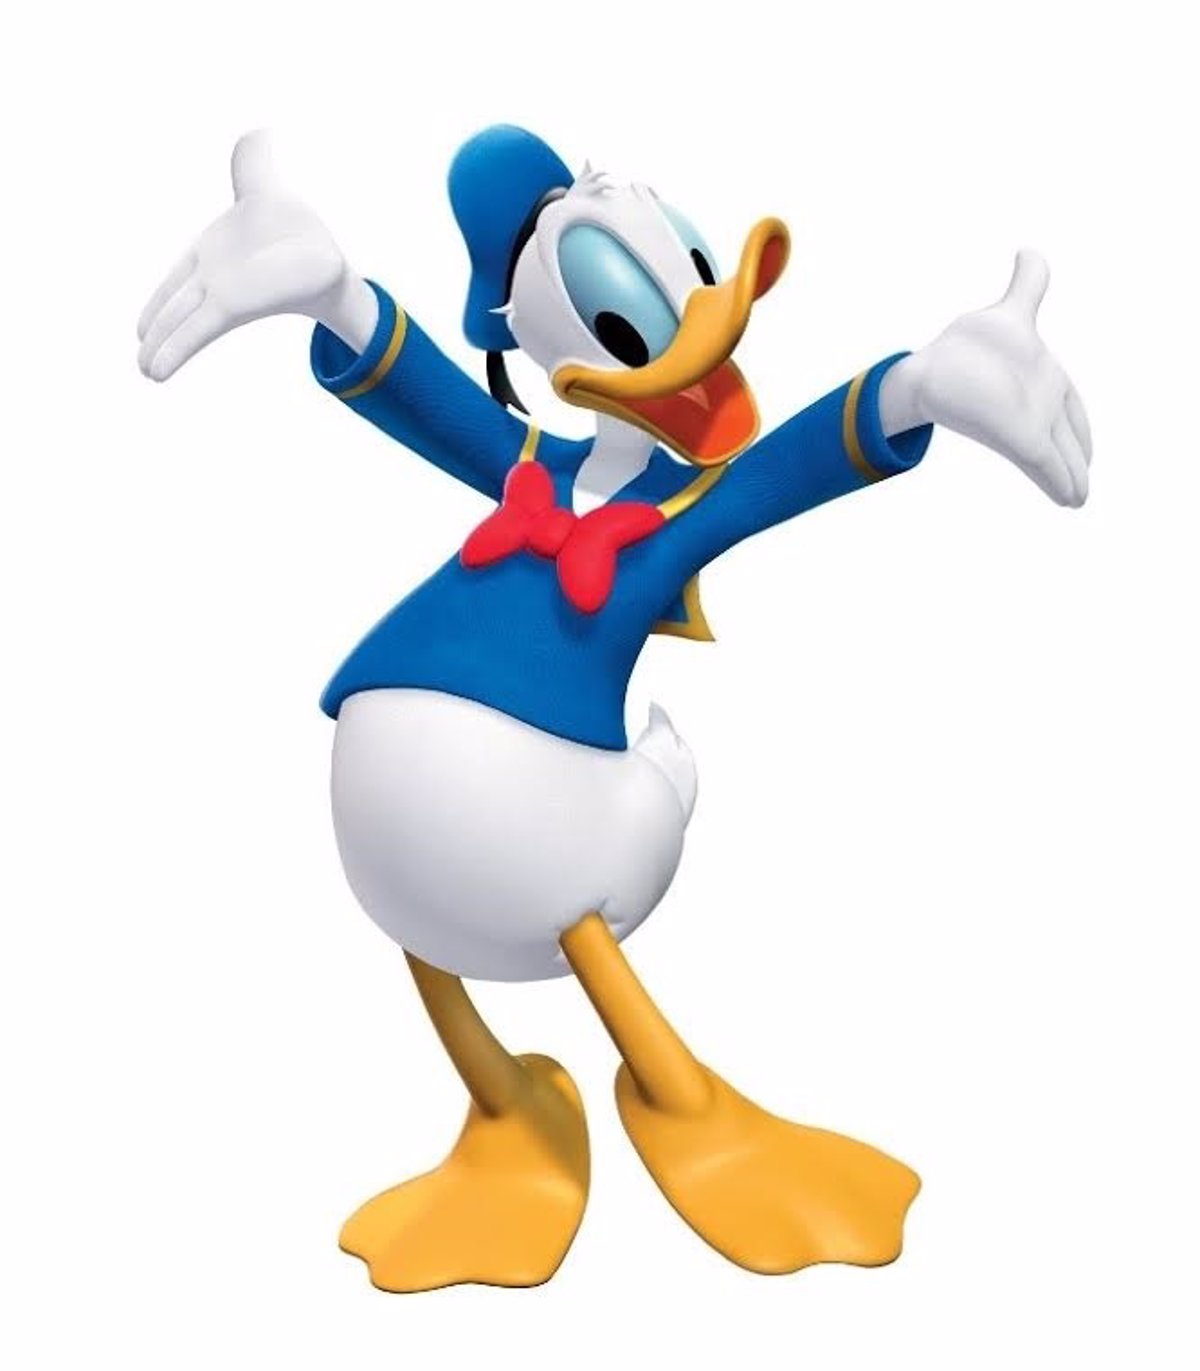 A veces a veces Robusto Ambiente Disney Channel celebra el cumpleaños del pato Donald